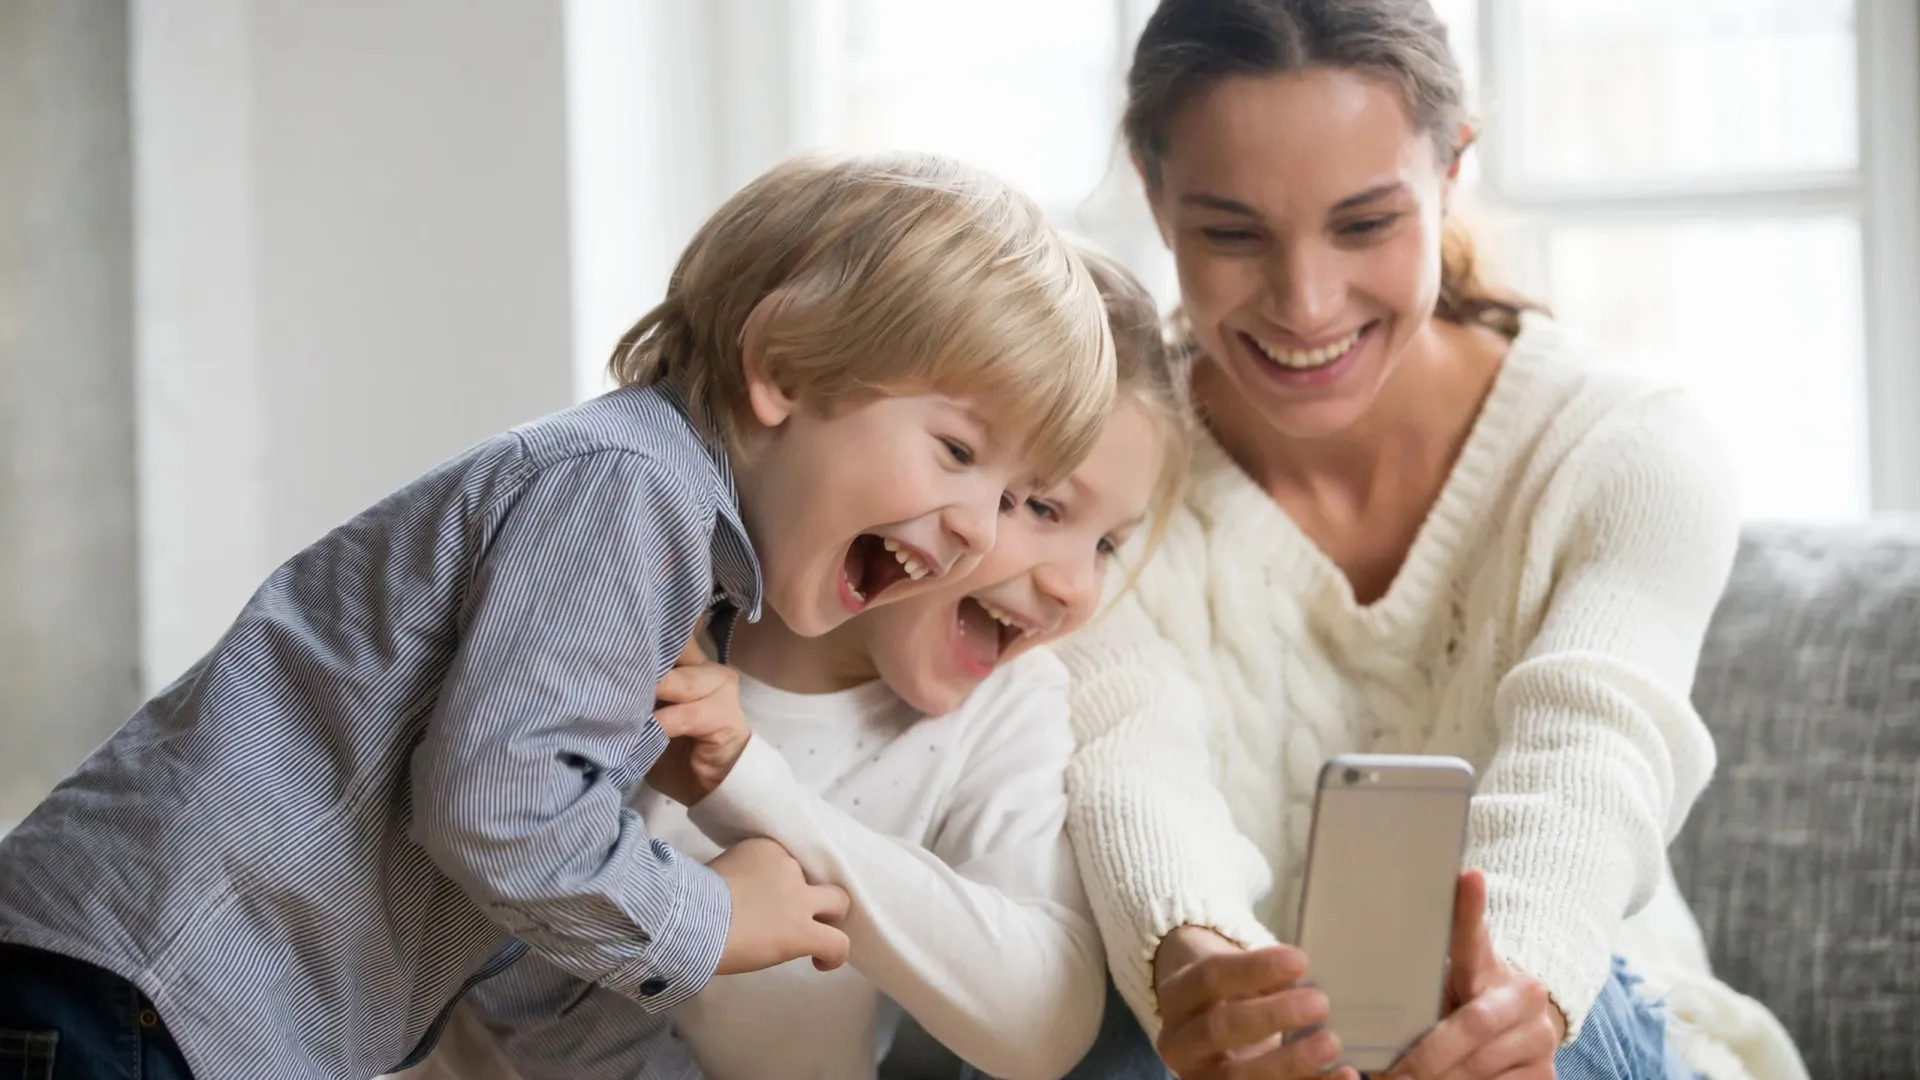 На Ямале обсудят, как воспитывать детей. Фото: fizkes/Shutterstock/Fotodom